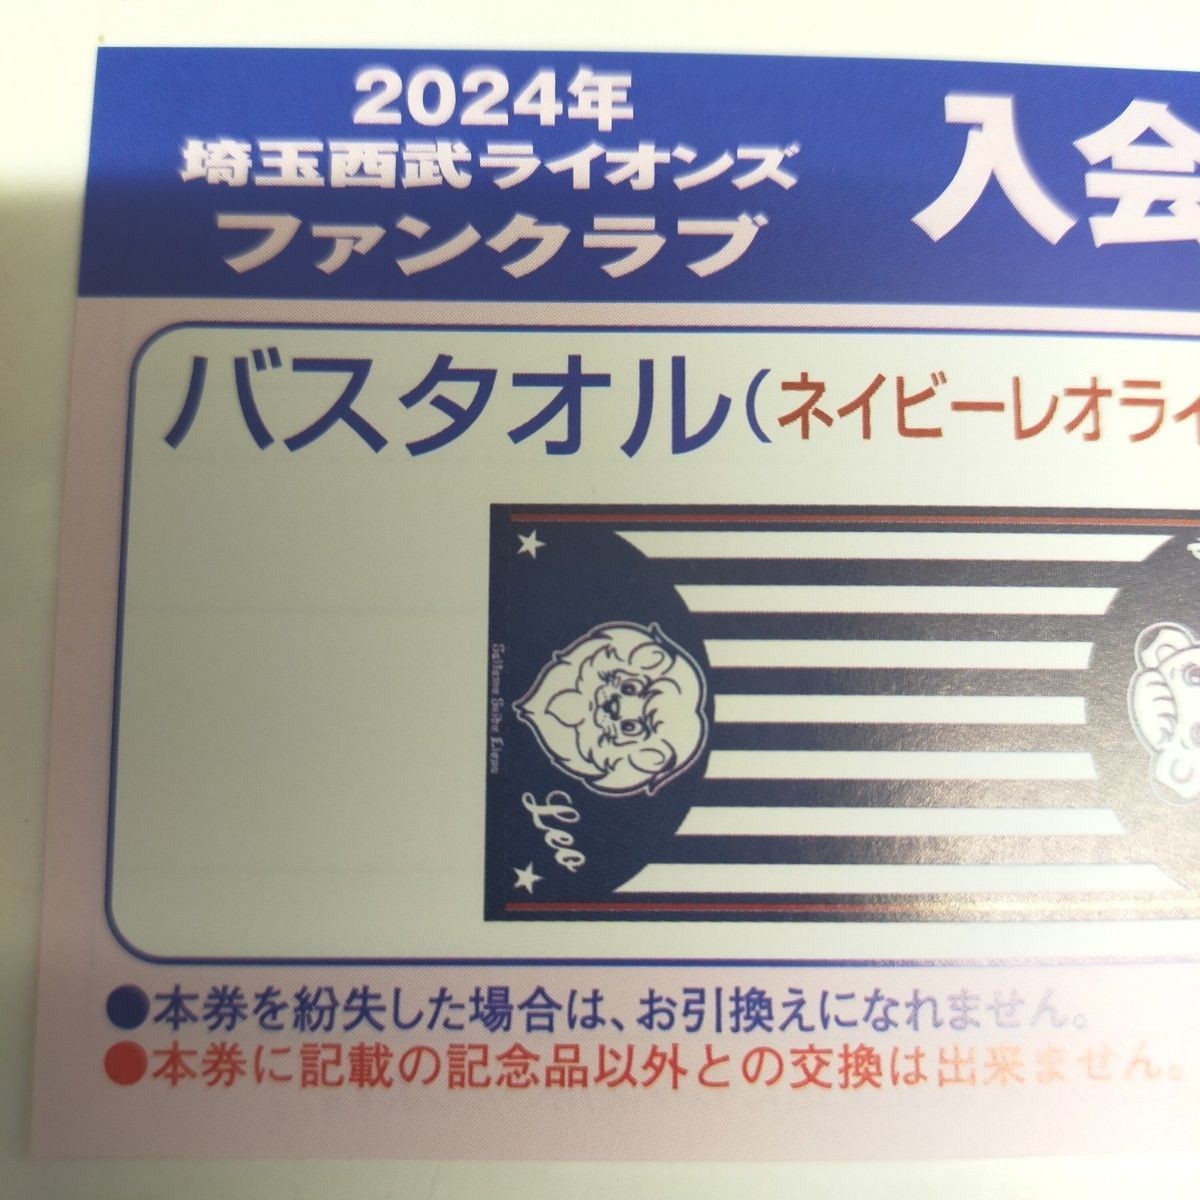 2024年埼玉西武ライオンズ 入会特典 バスタオル&500円クーポン - 野球